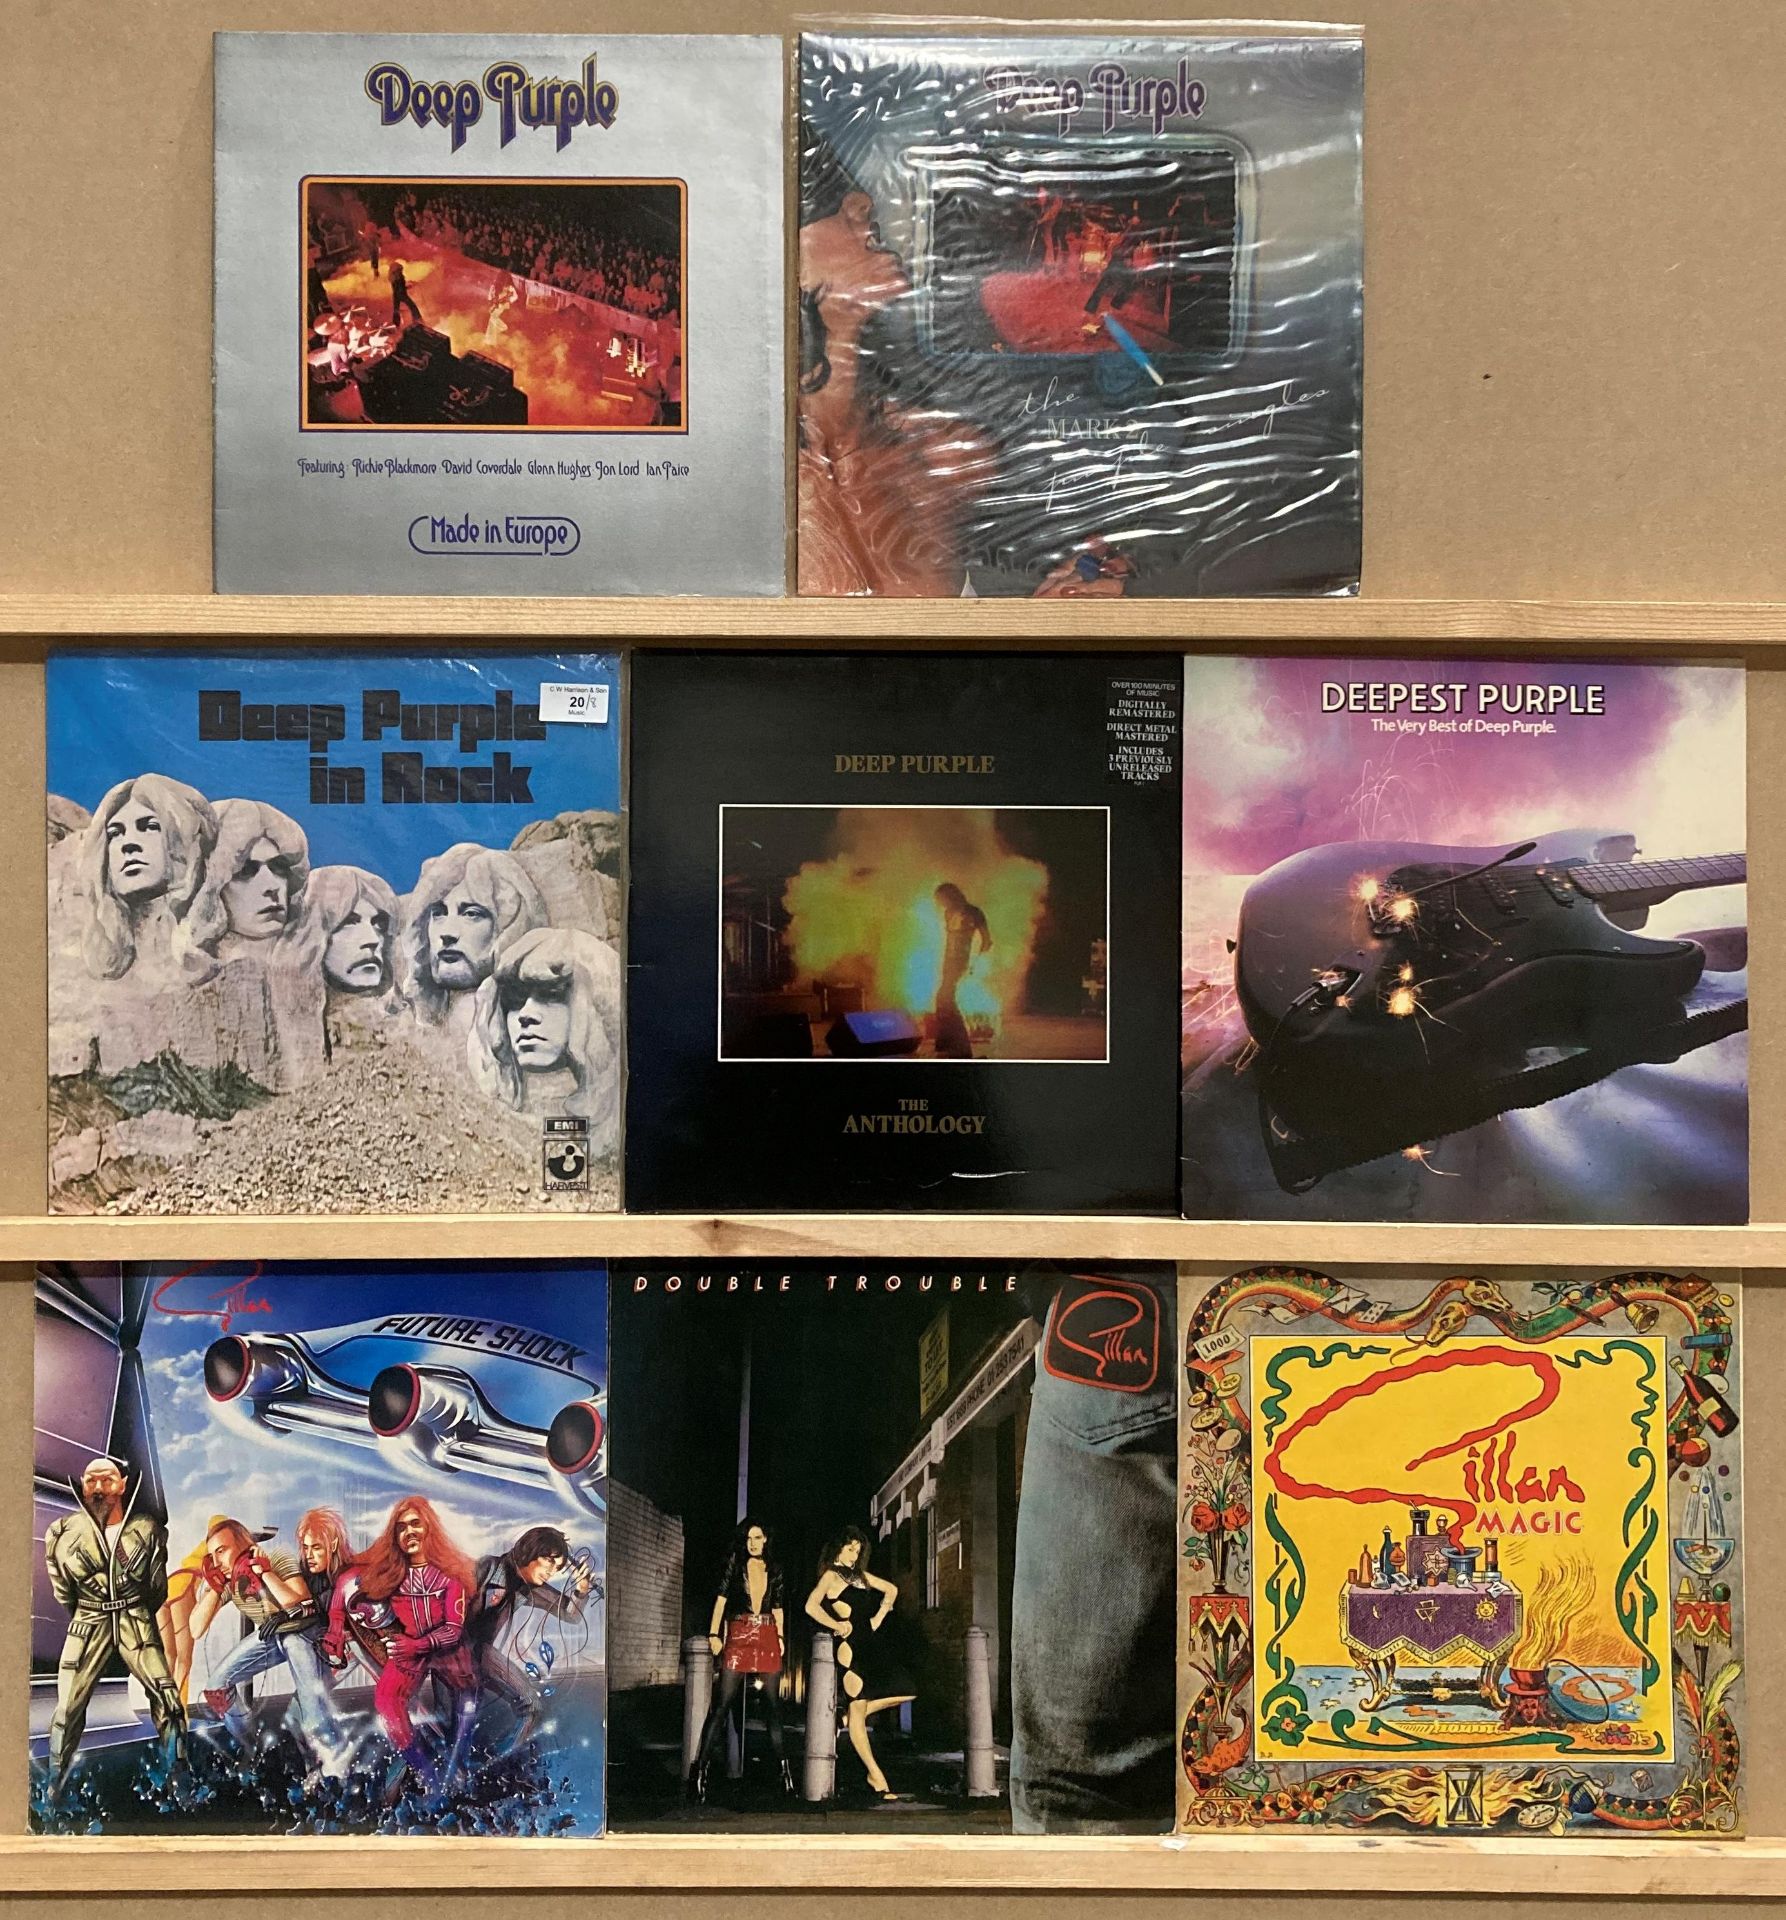 Five DEEP PURPLE LPs - 'Deep Purple in Rock' on EMI FA 3011,